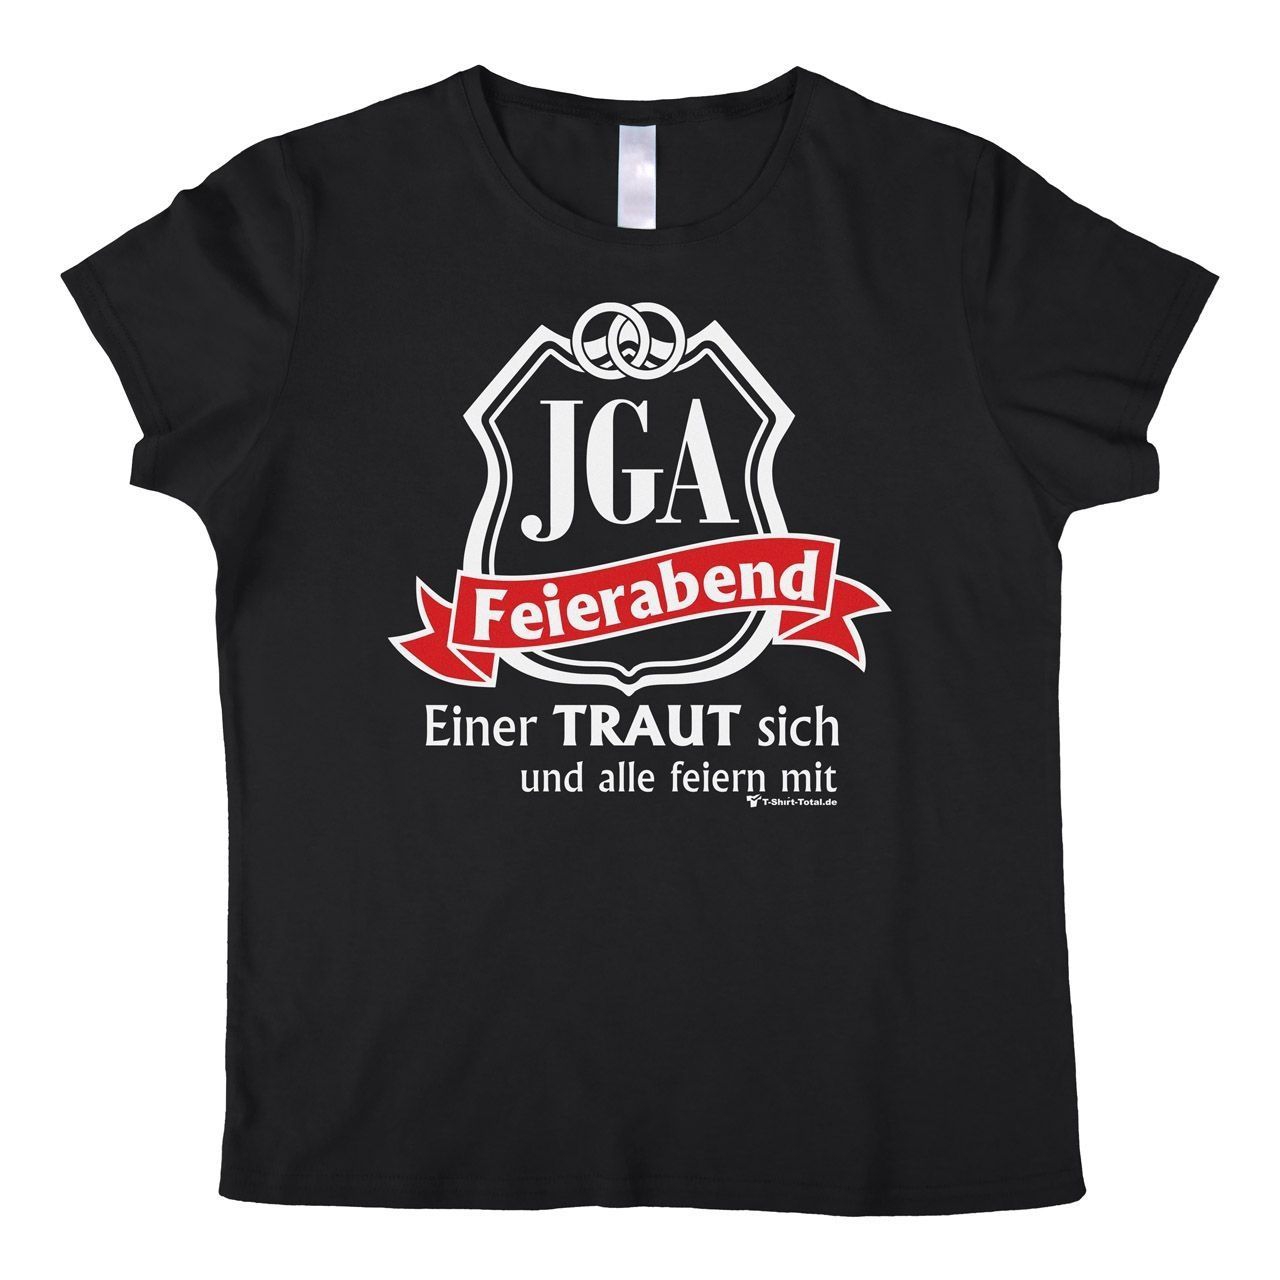 JGA Feierabend Woman T-Shirt schwarz Small